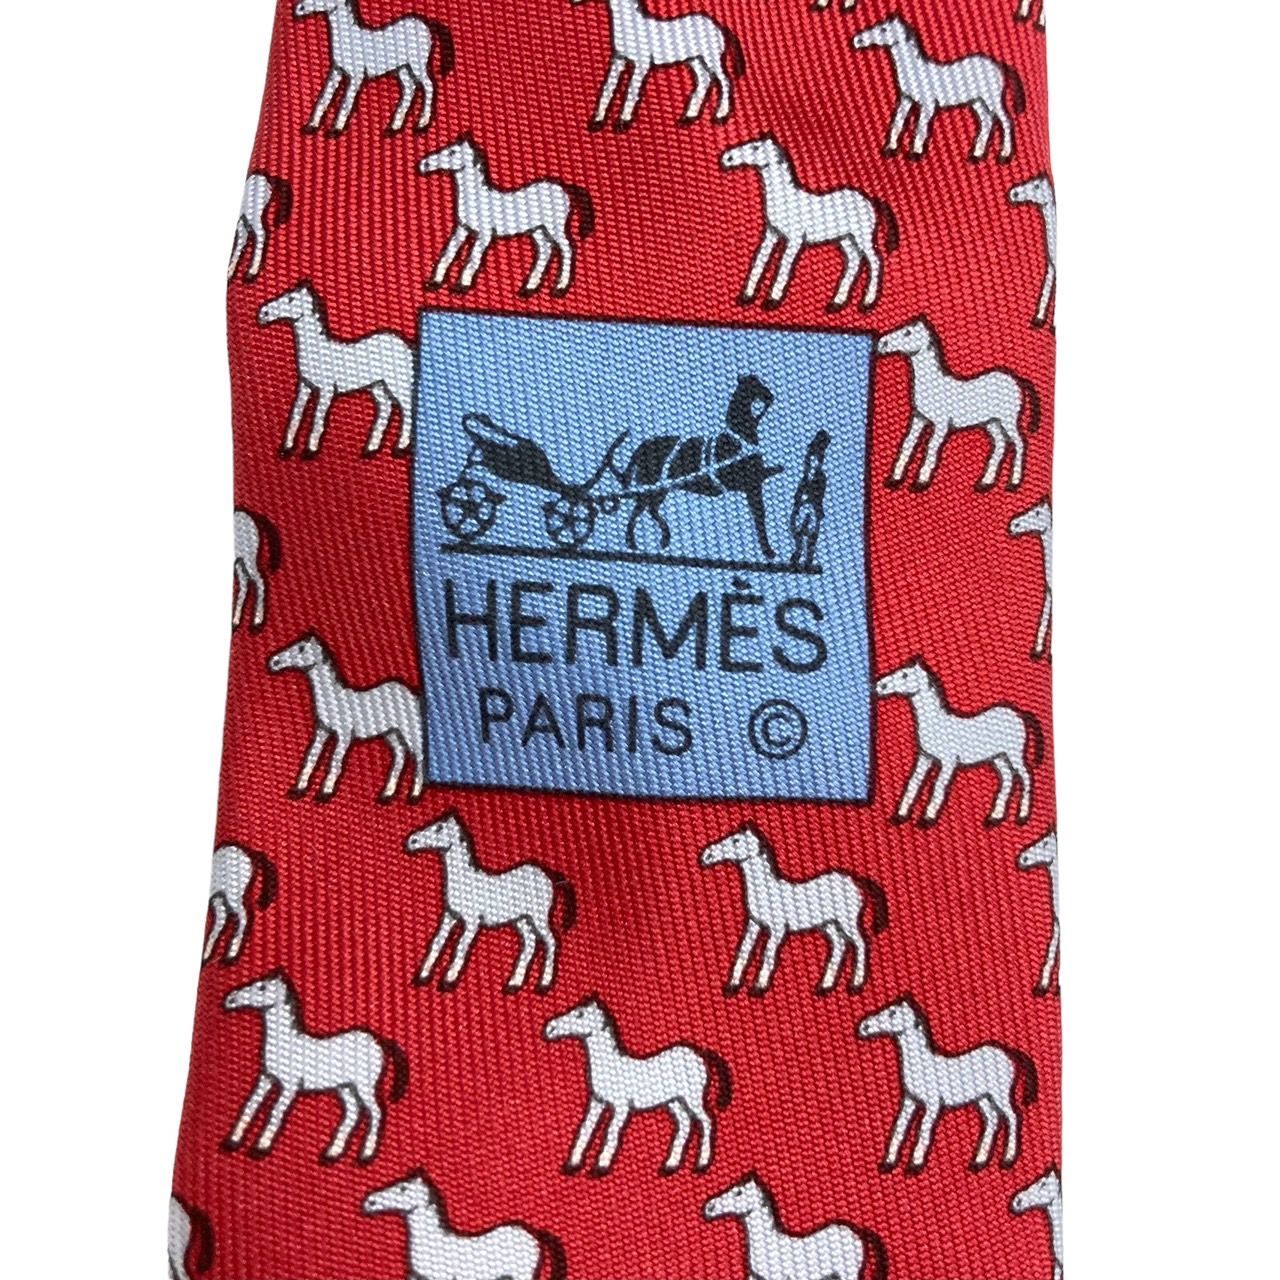 【新作】送料無料 HERMES エルメス ネクタイ シルク レッド系 折り紙風馬柄 ネクタイ